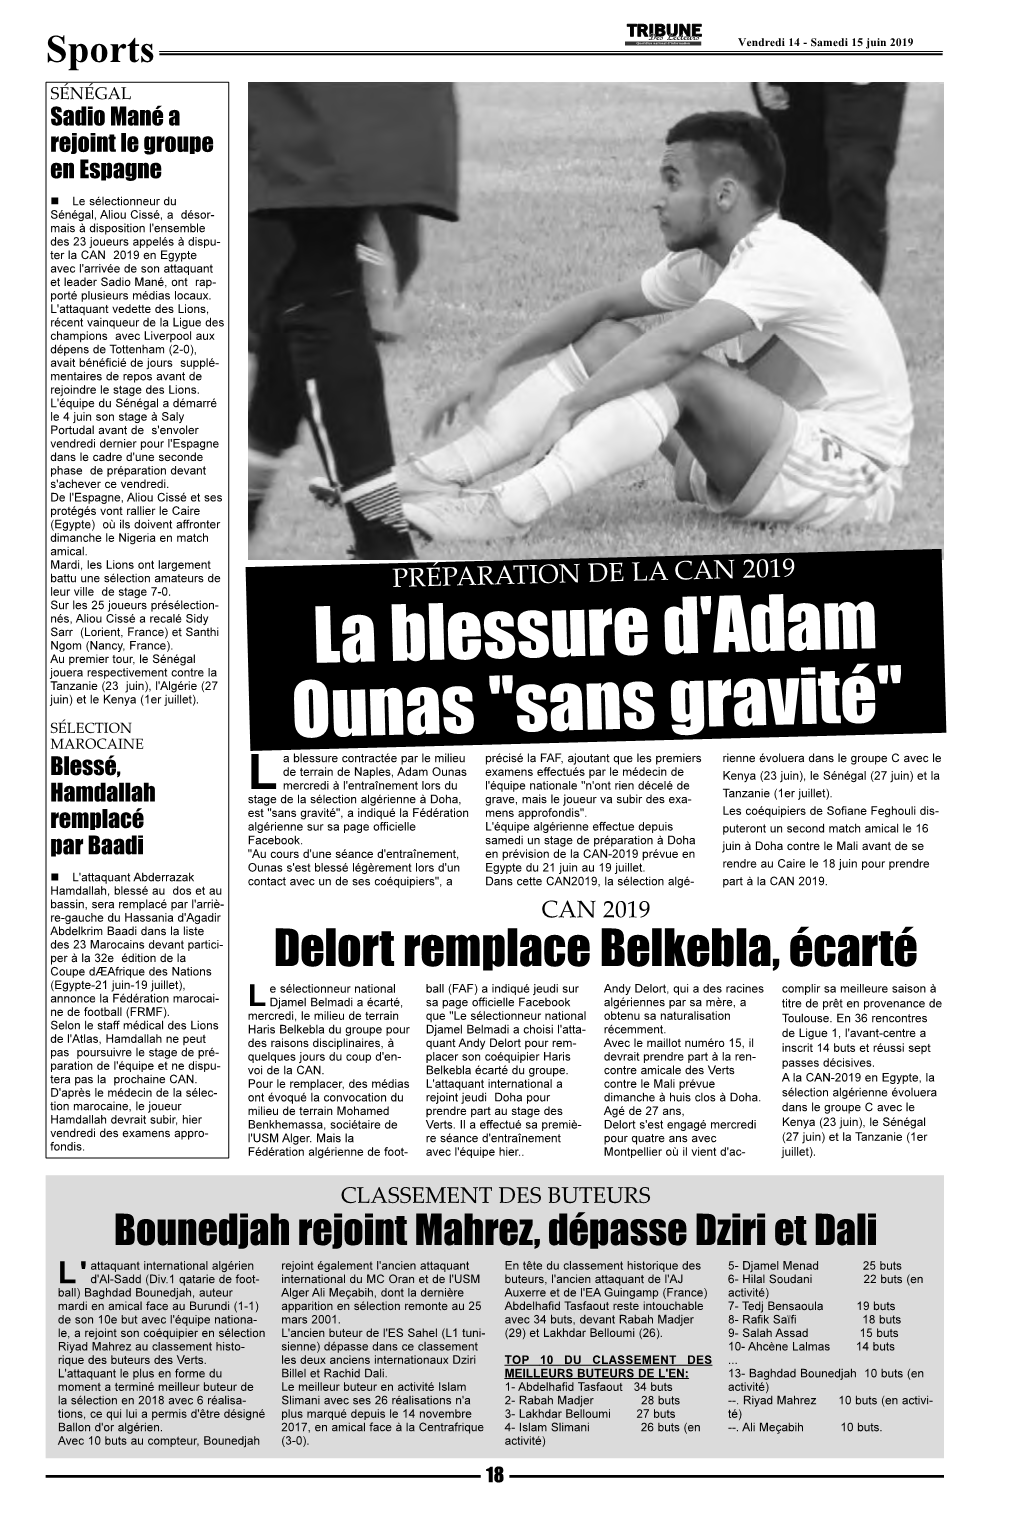 La Blessure D'adam Ounas "Sans Gravité"